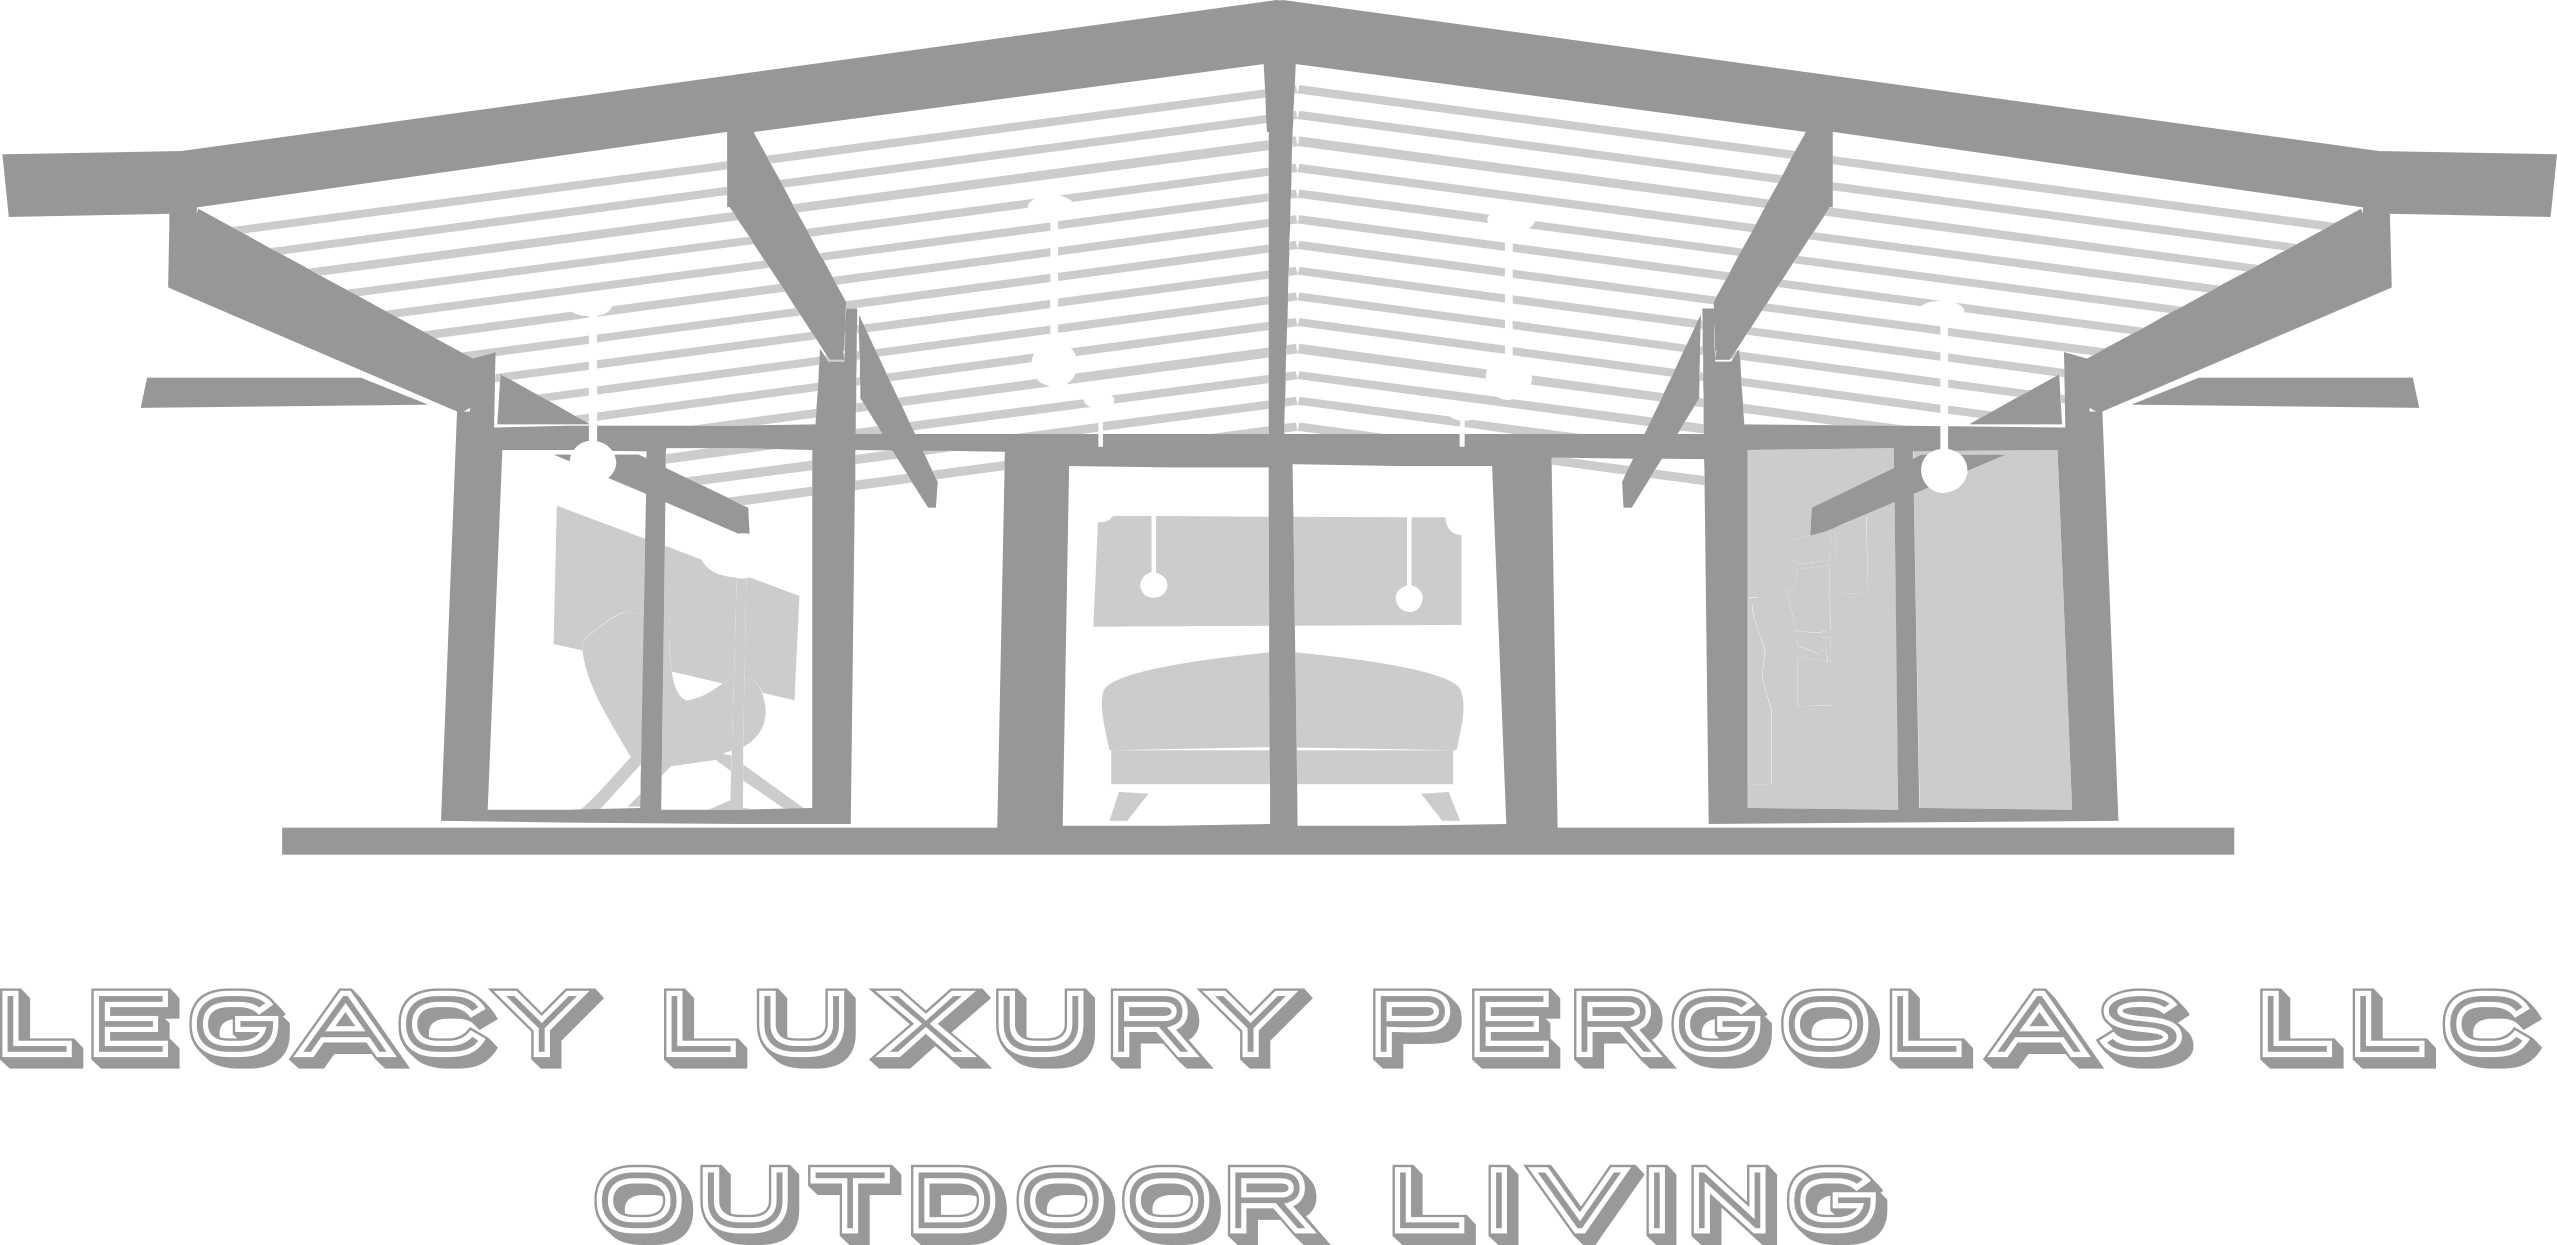 Legacy Luxury Pergolas, LLC Logo